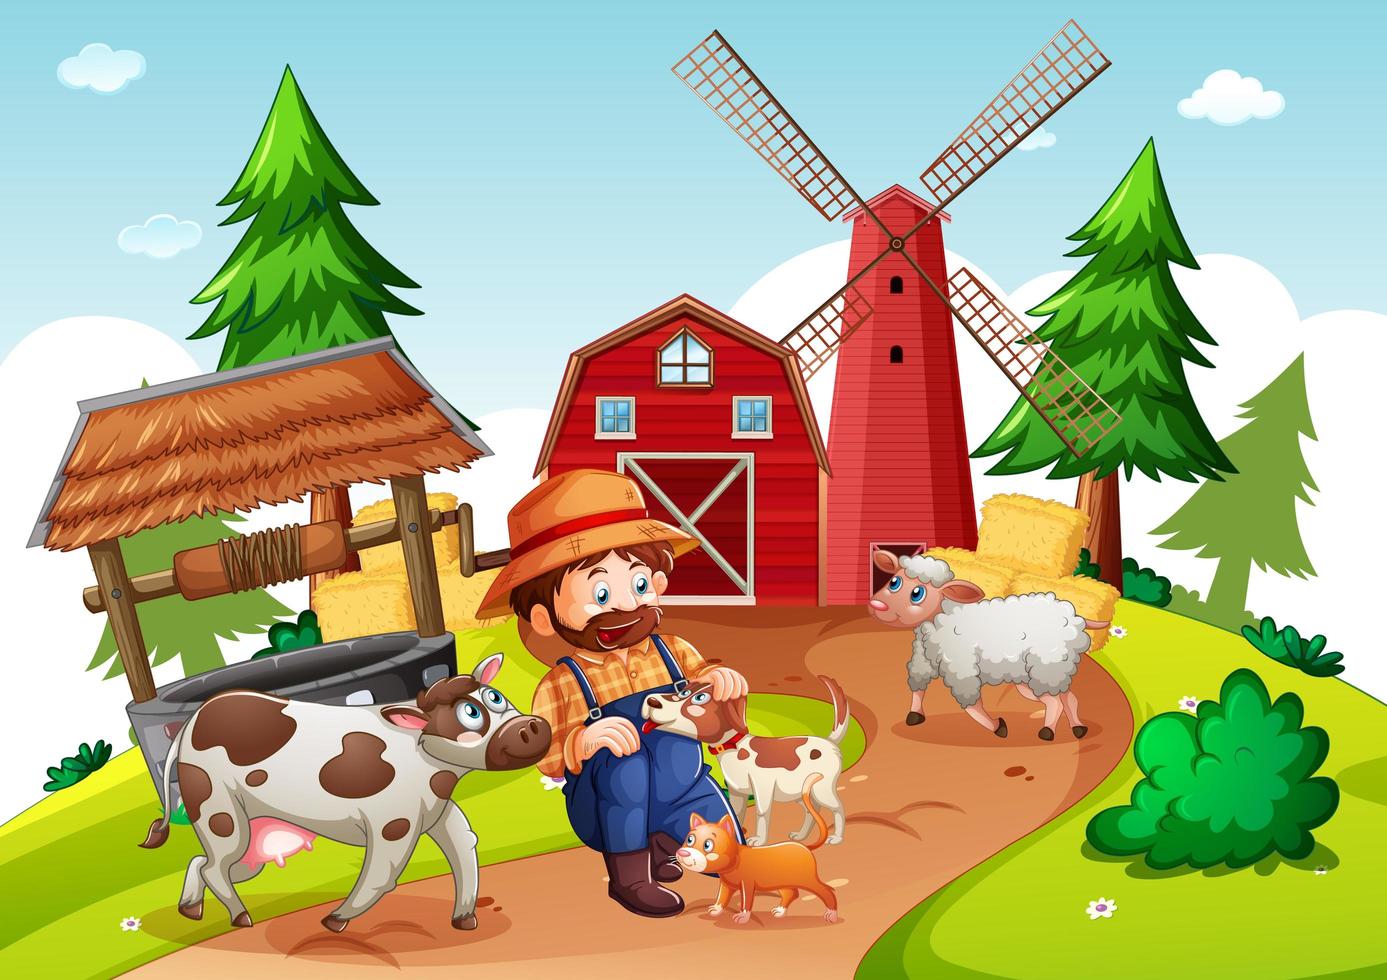 Farmer with animal farm in farm scene vector